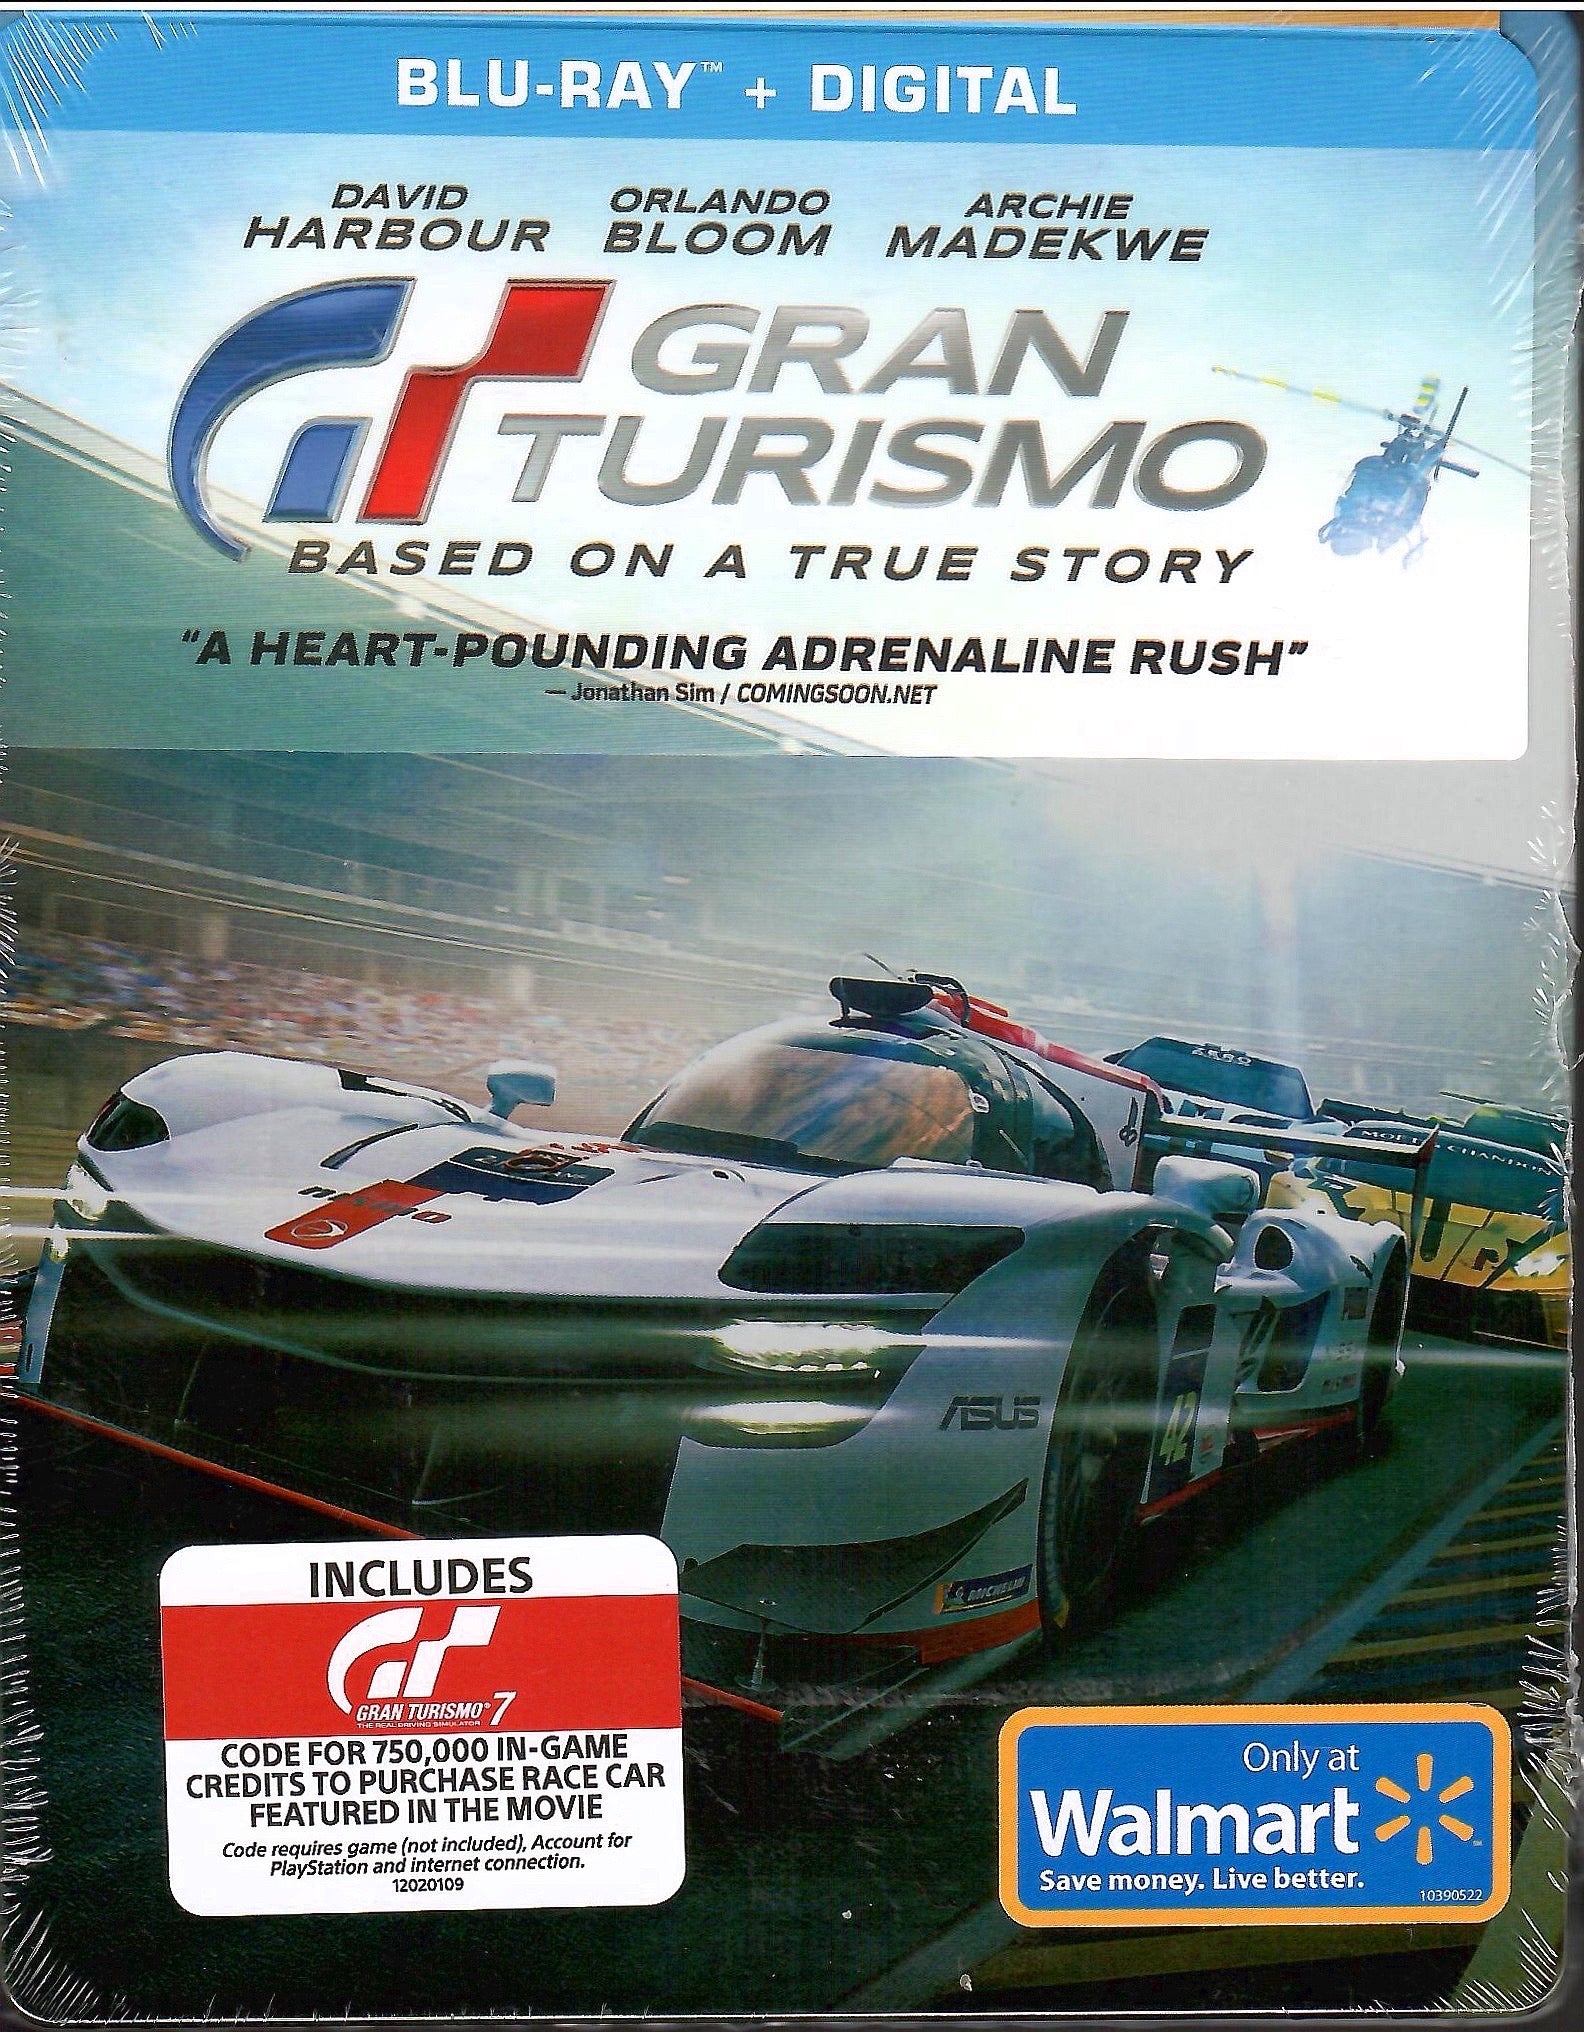 PS2 GRAN TURISMO 4 THE REAL DRIVING SIMULATOR Korean subtitles 